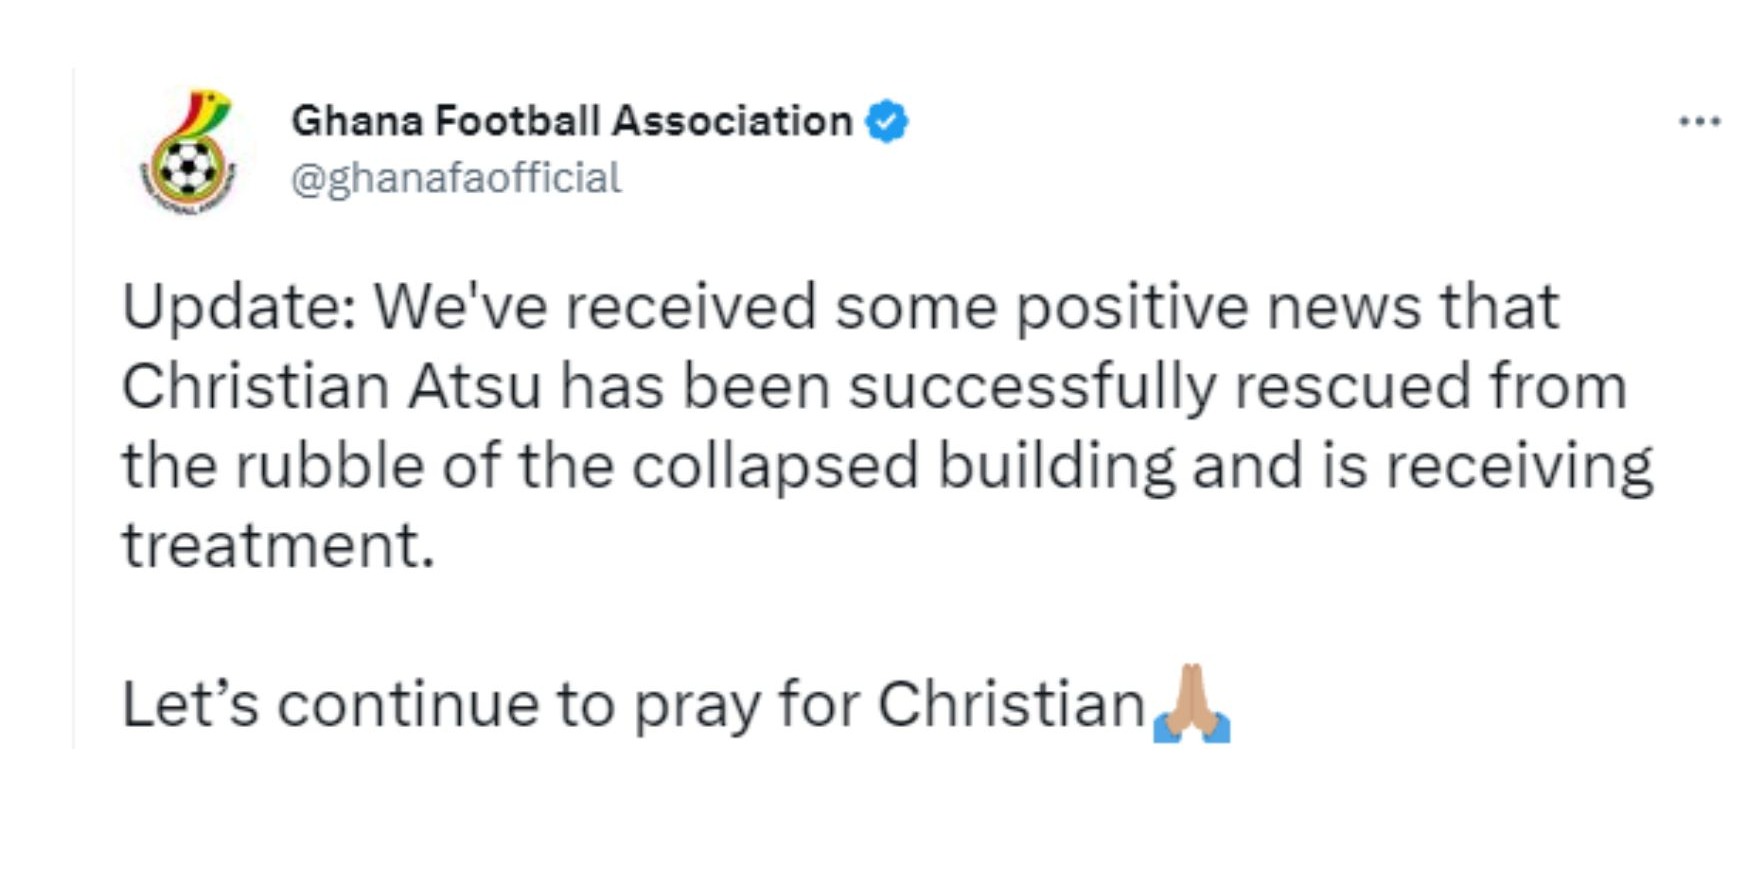 Publicación en la Asociación de Fútbol de Ghana / Twitter